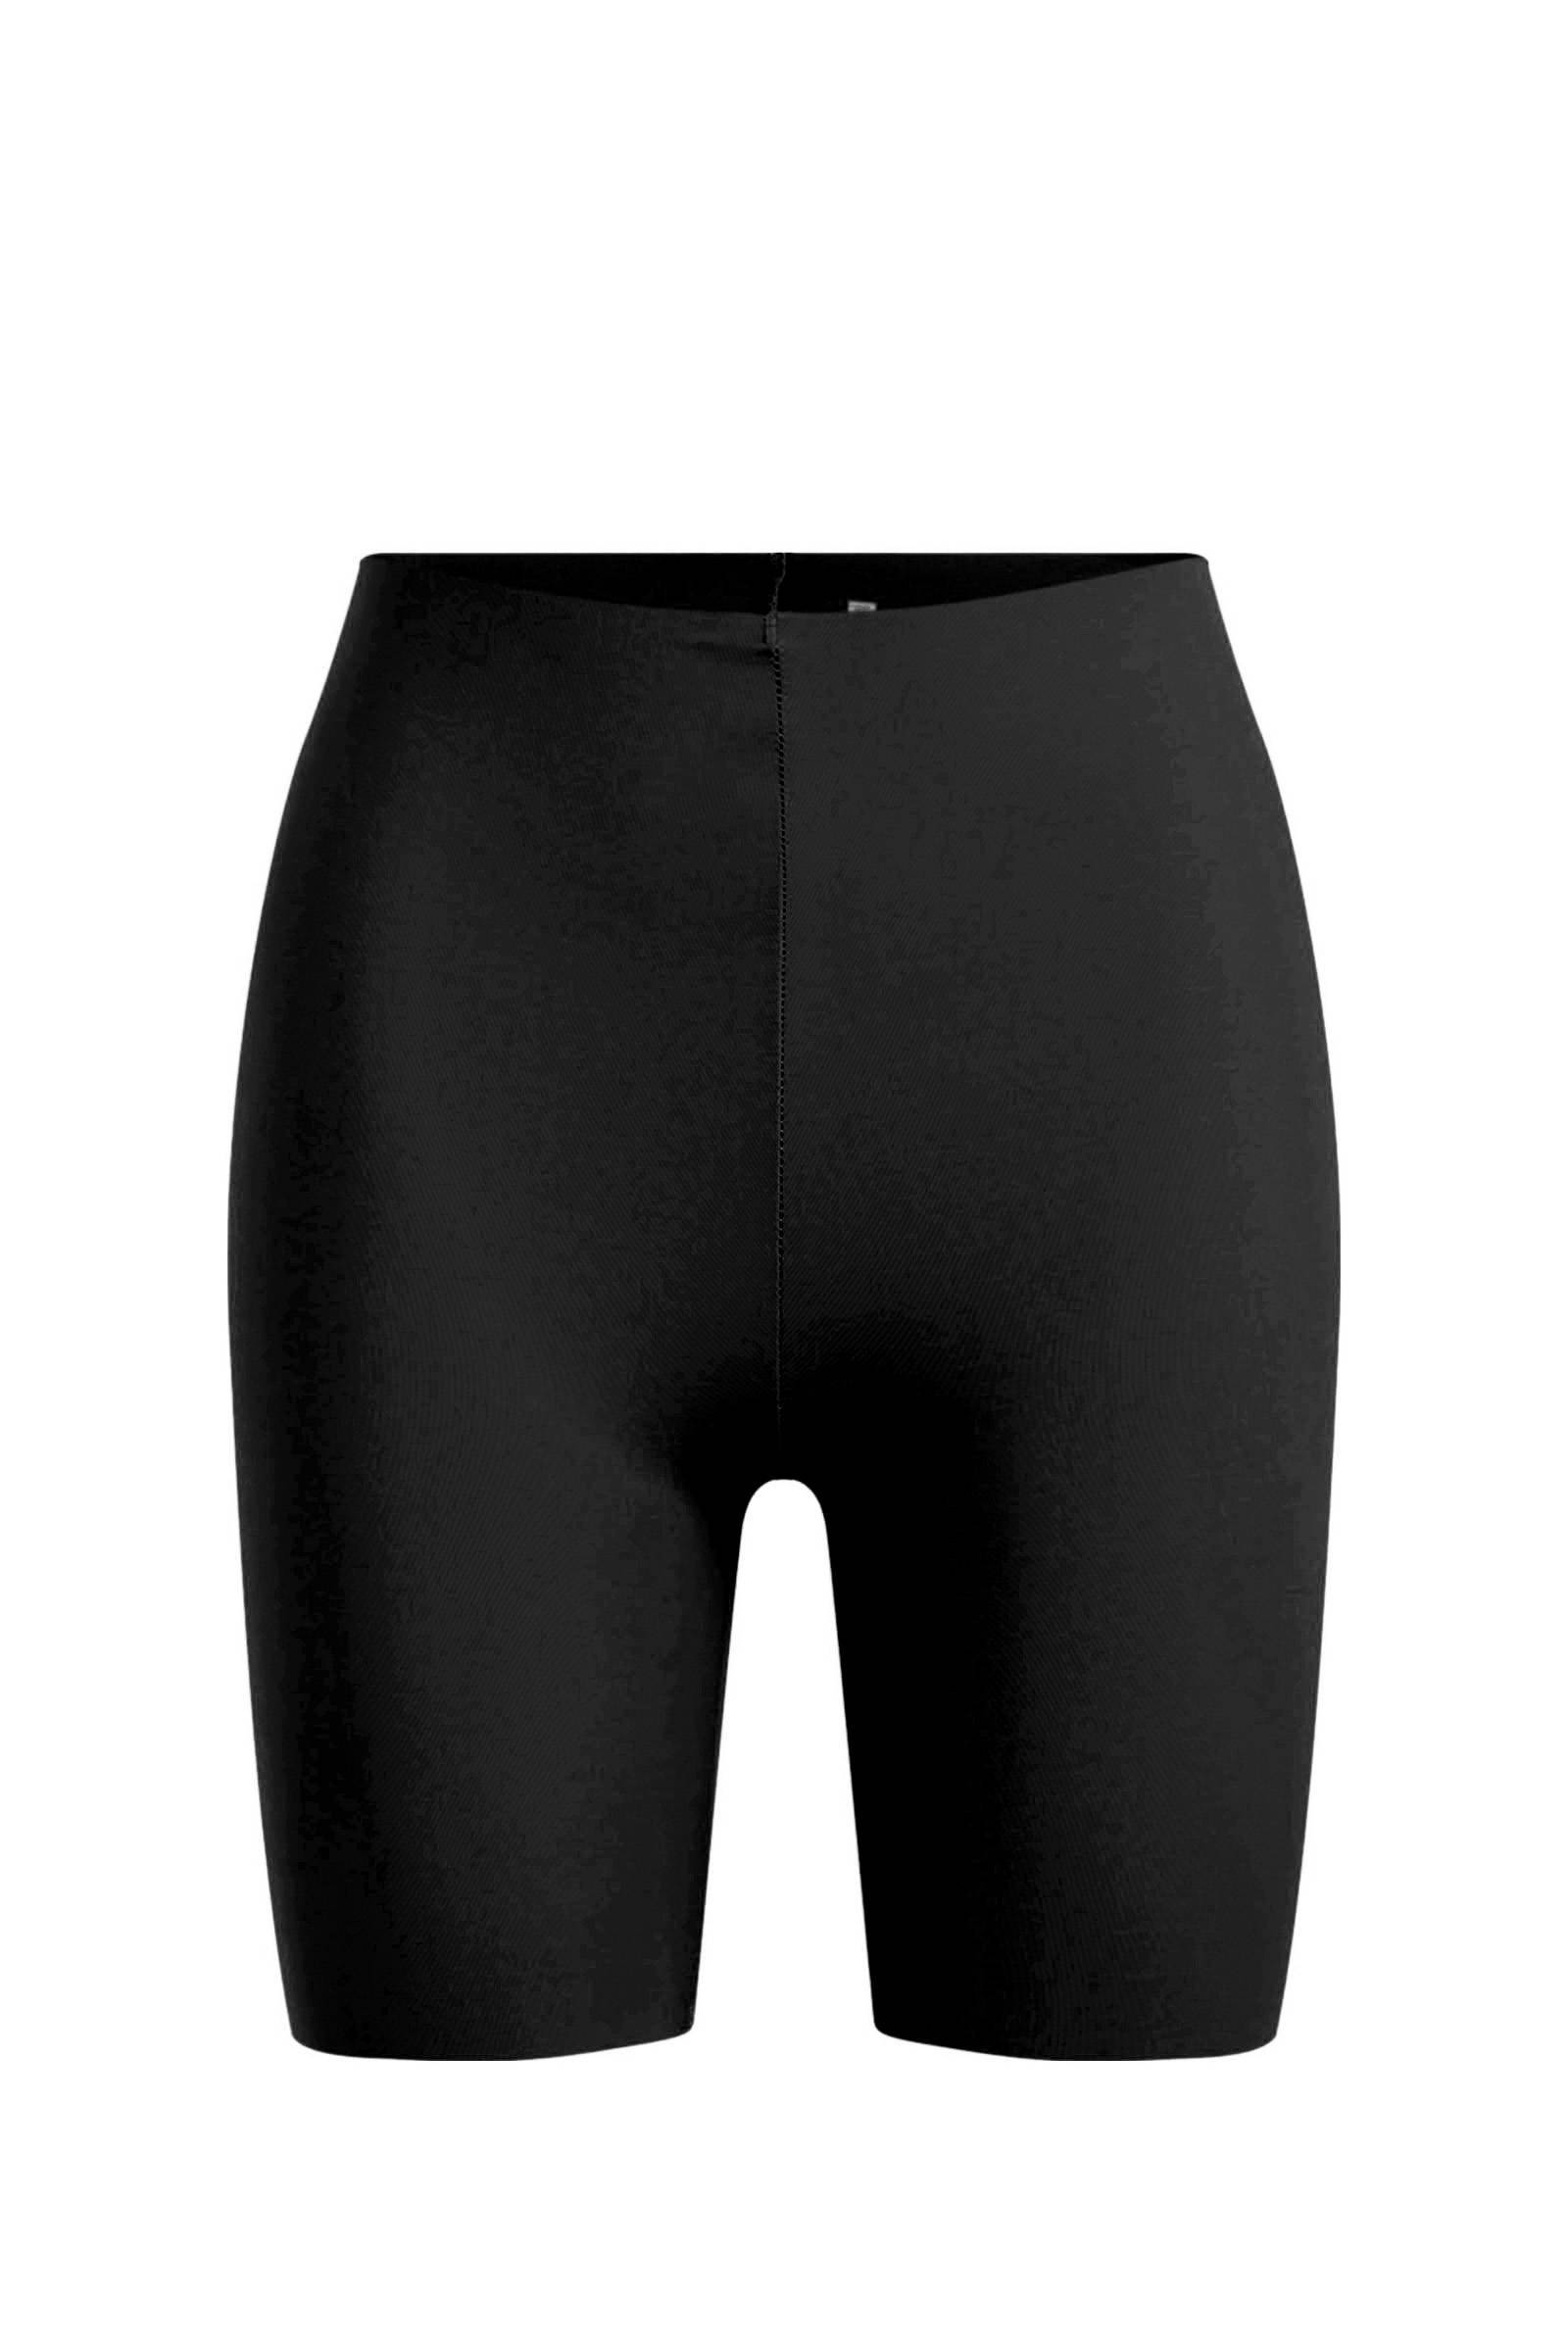 wehkamp Dames Kleding Lingerie & Ondermode Shapewear Corrigerende short zwart 